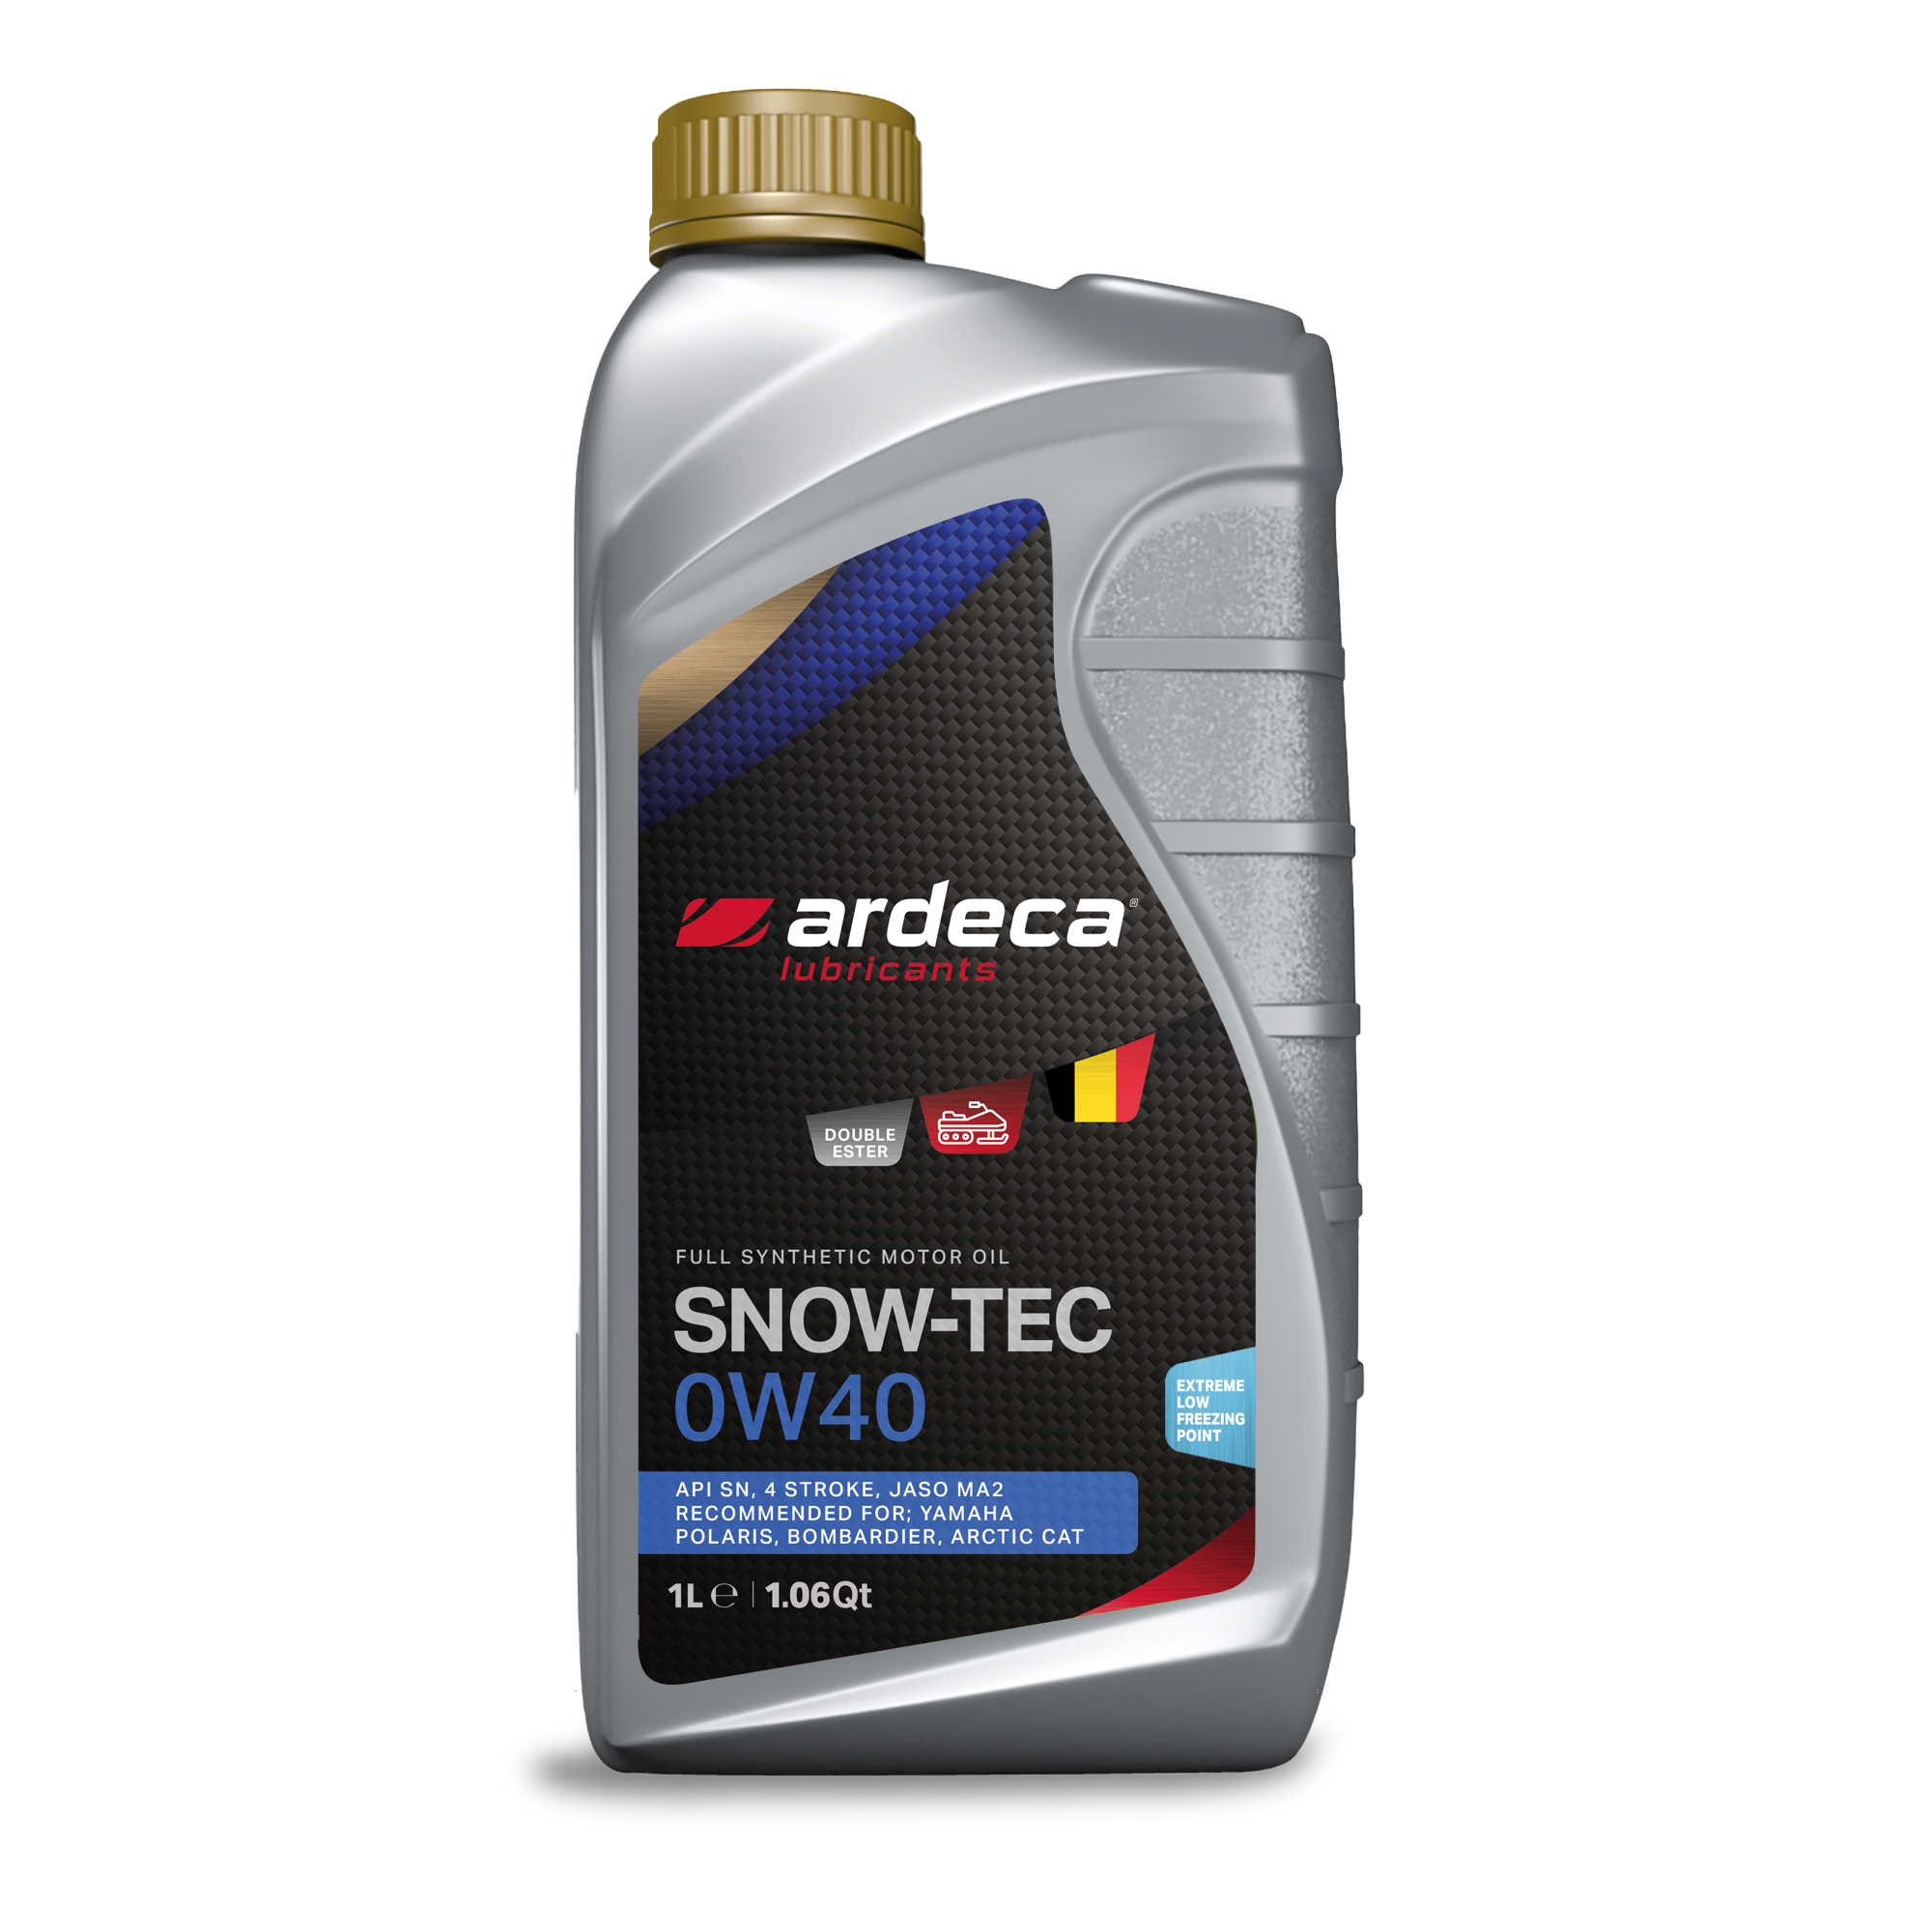 SNOW-TEC 0W40